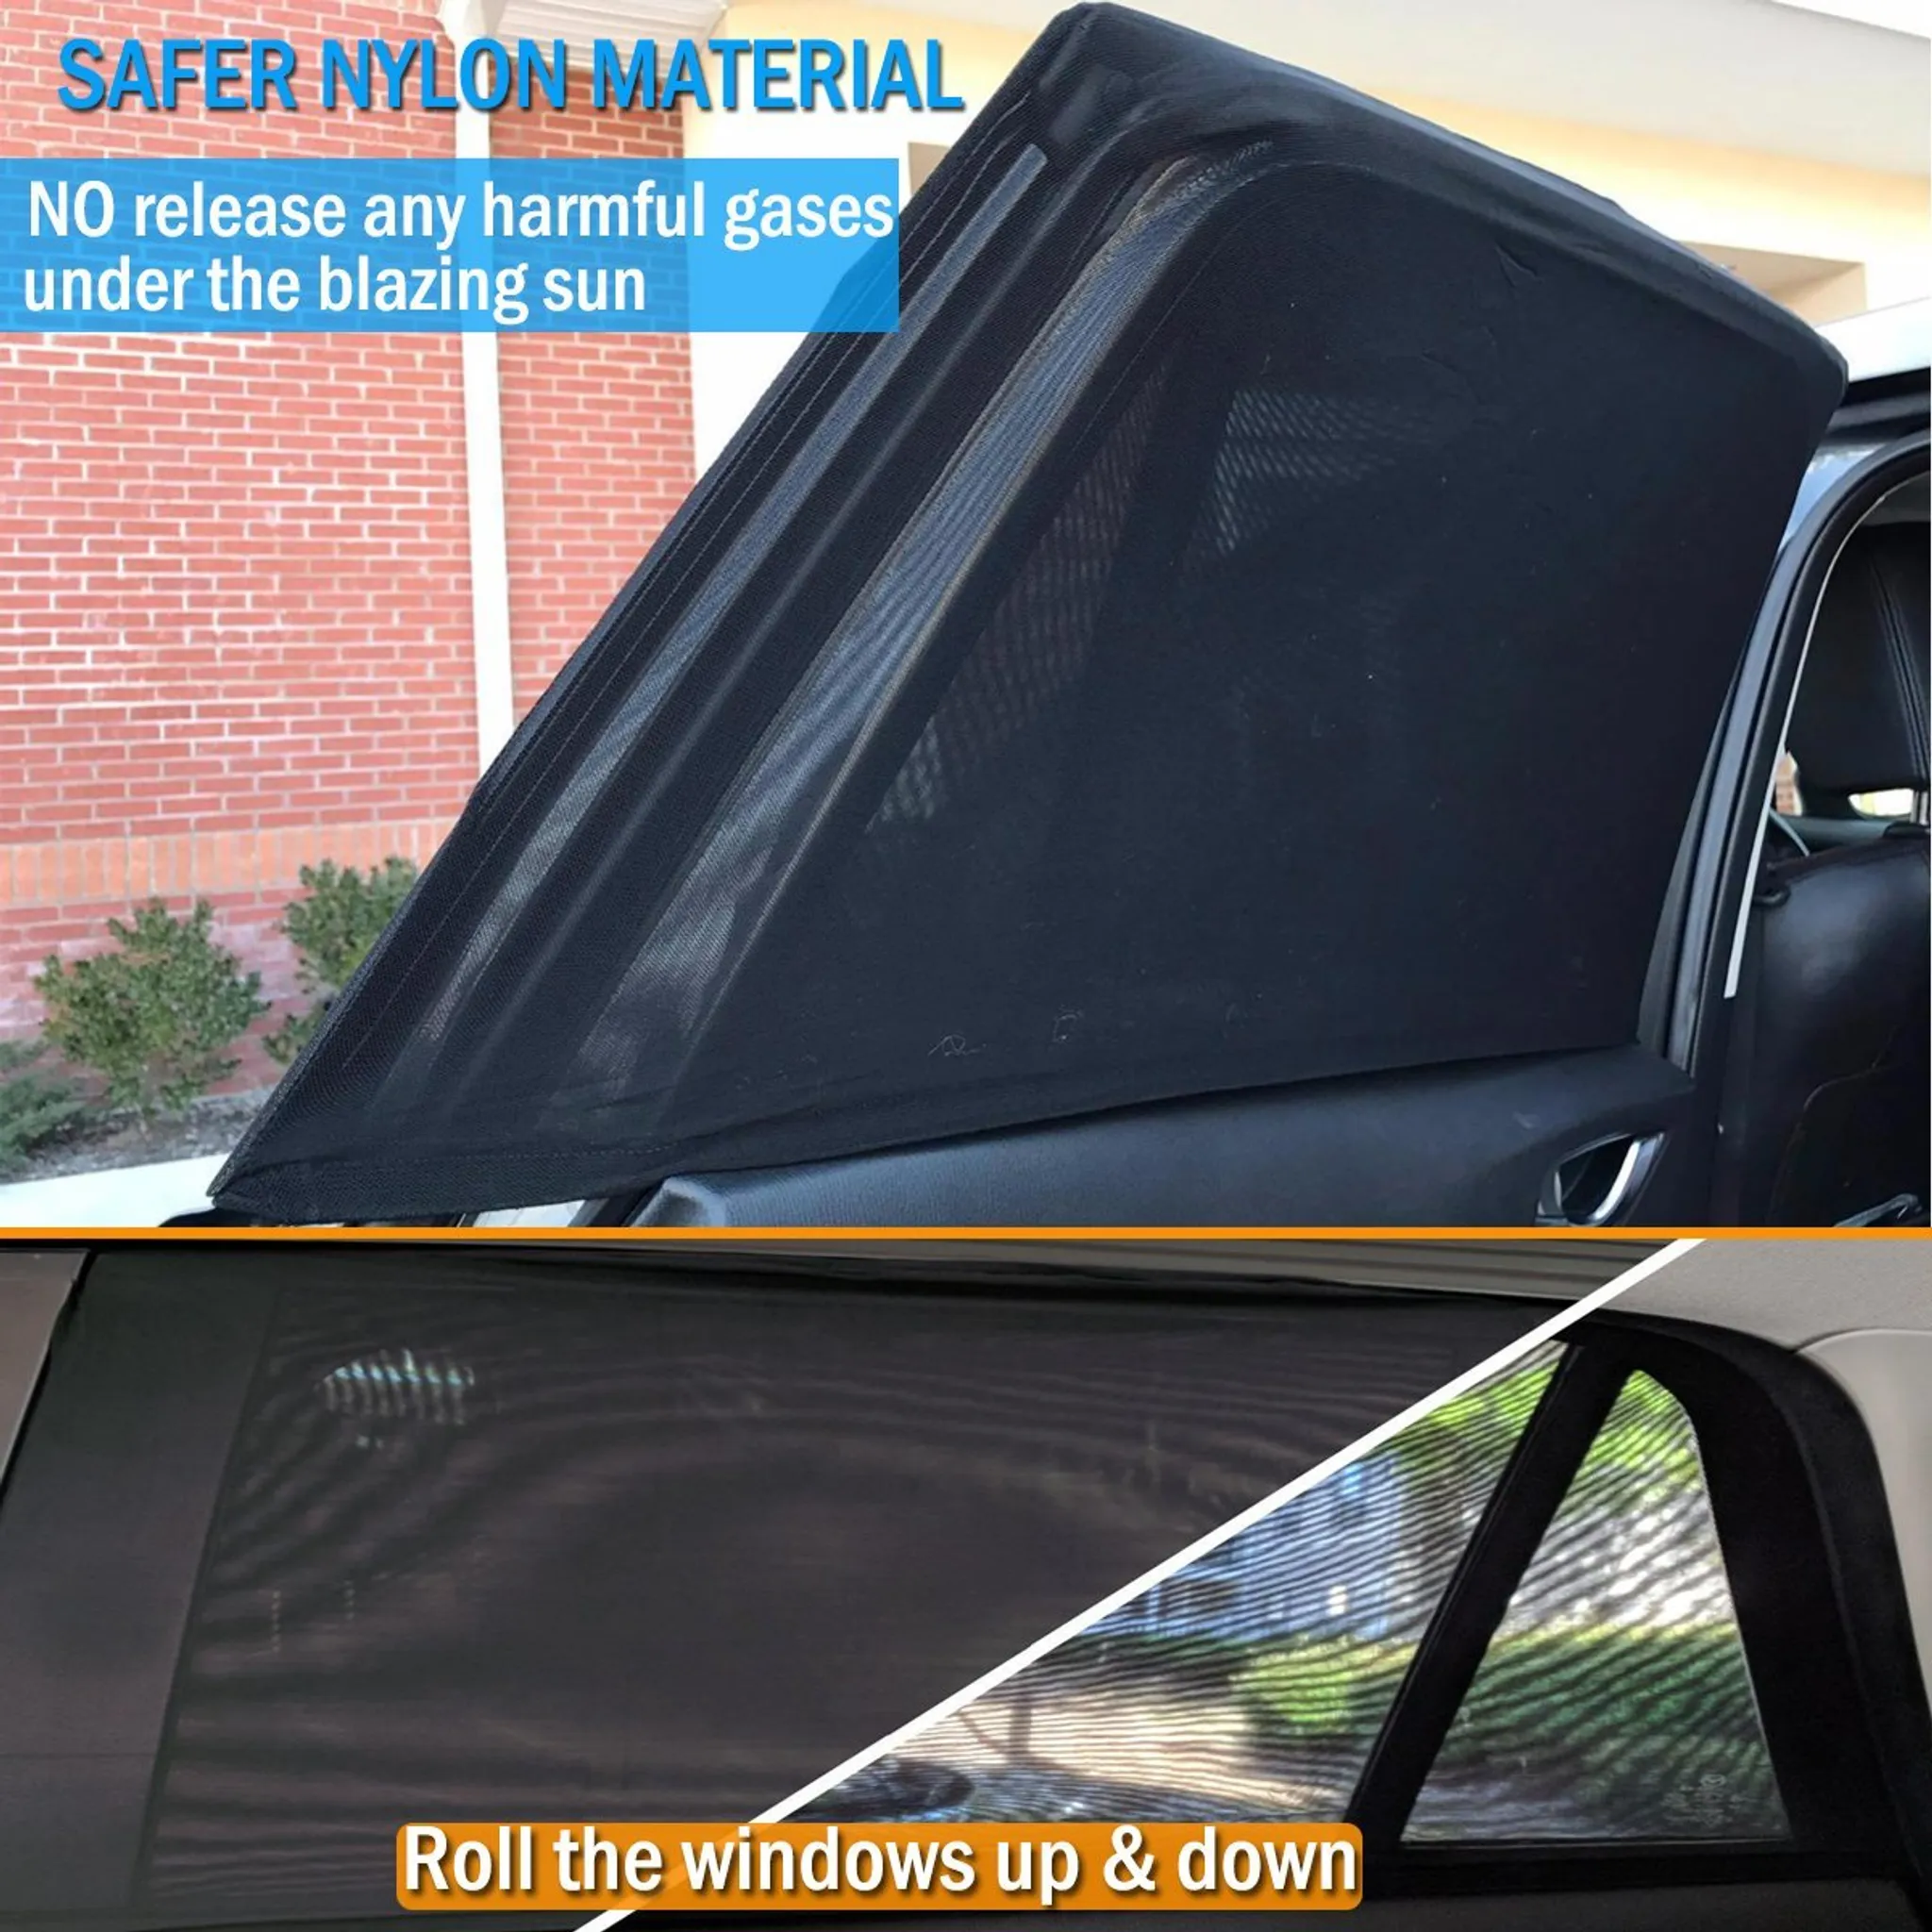 Fliegenschutz Fliegengitter für Auto Autofenster – 2 Stück Netz Mesh Schwarz